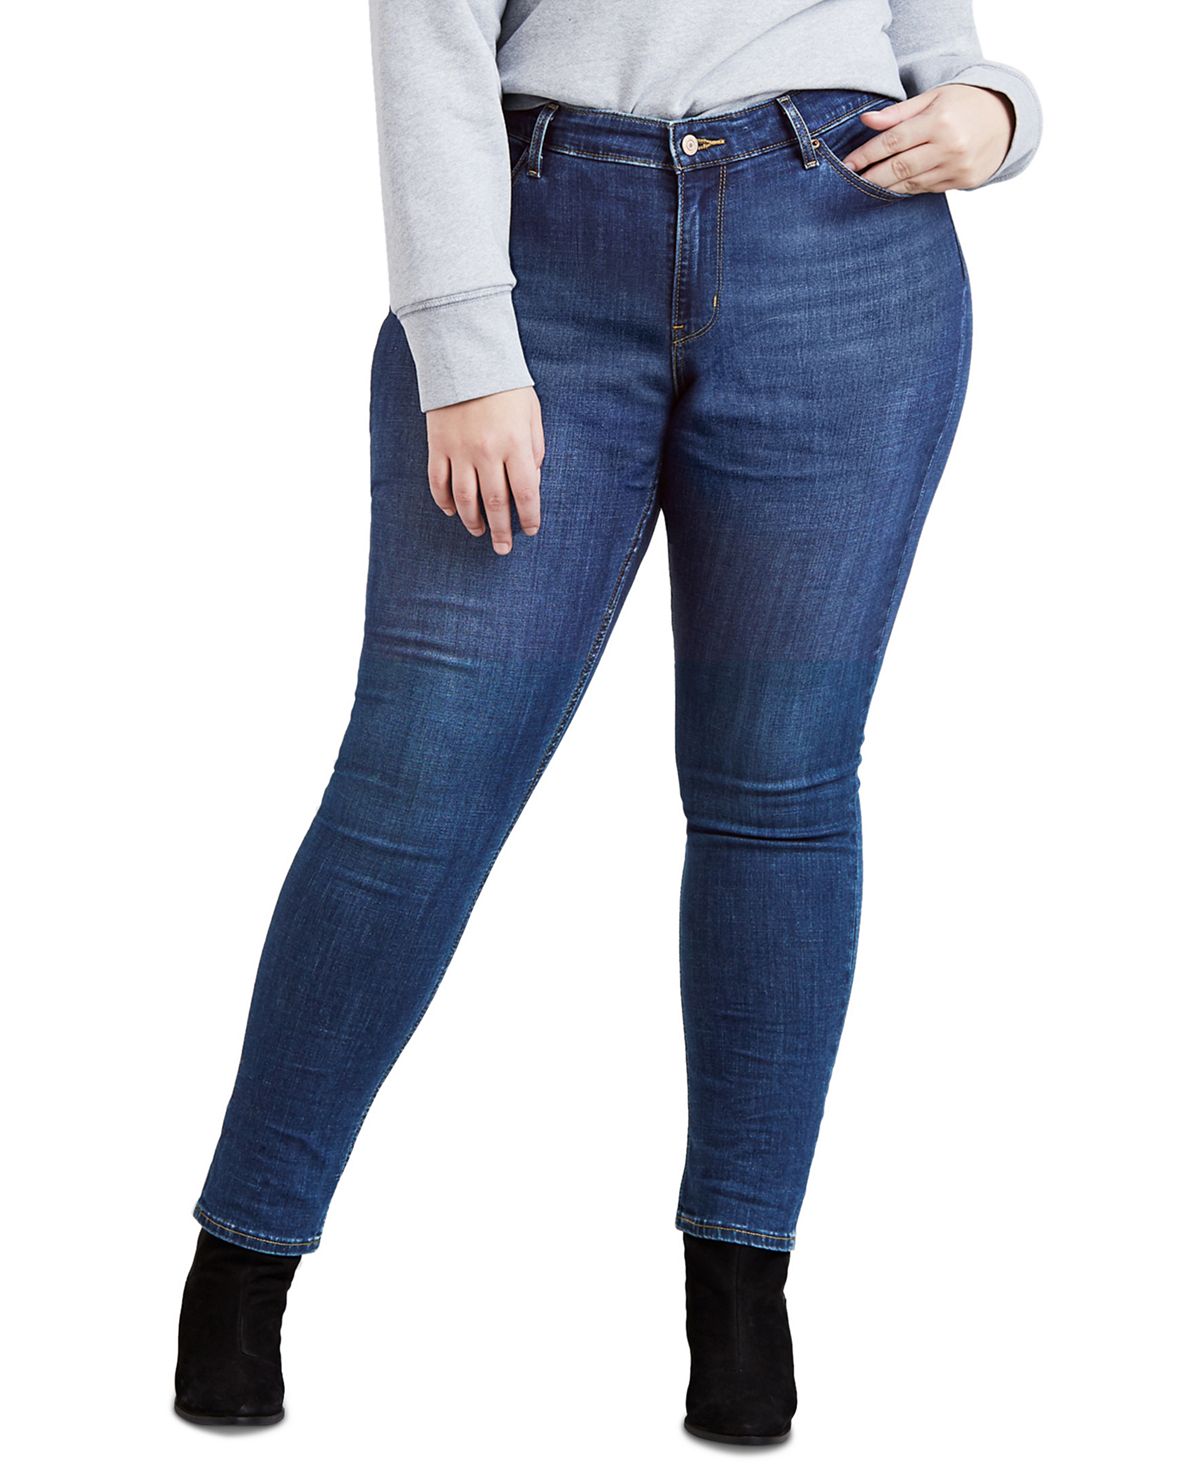 цена Модные джинсы скинни размера 711 больших размеров Levi's